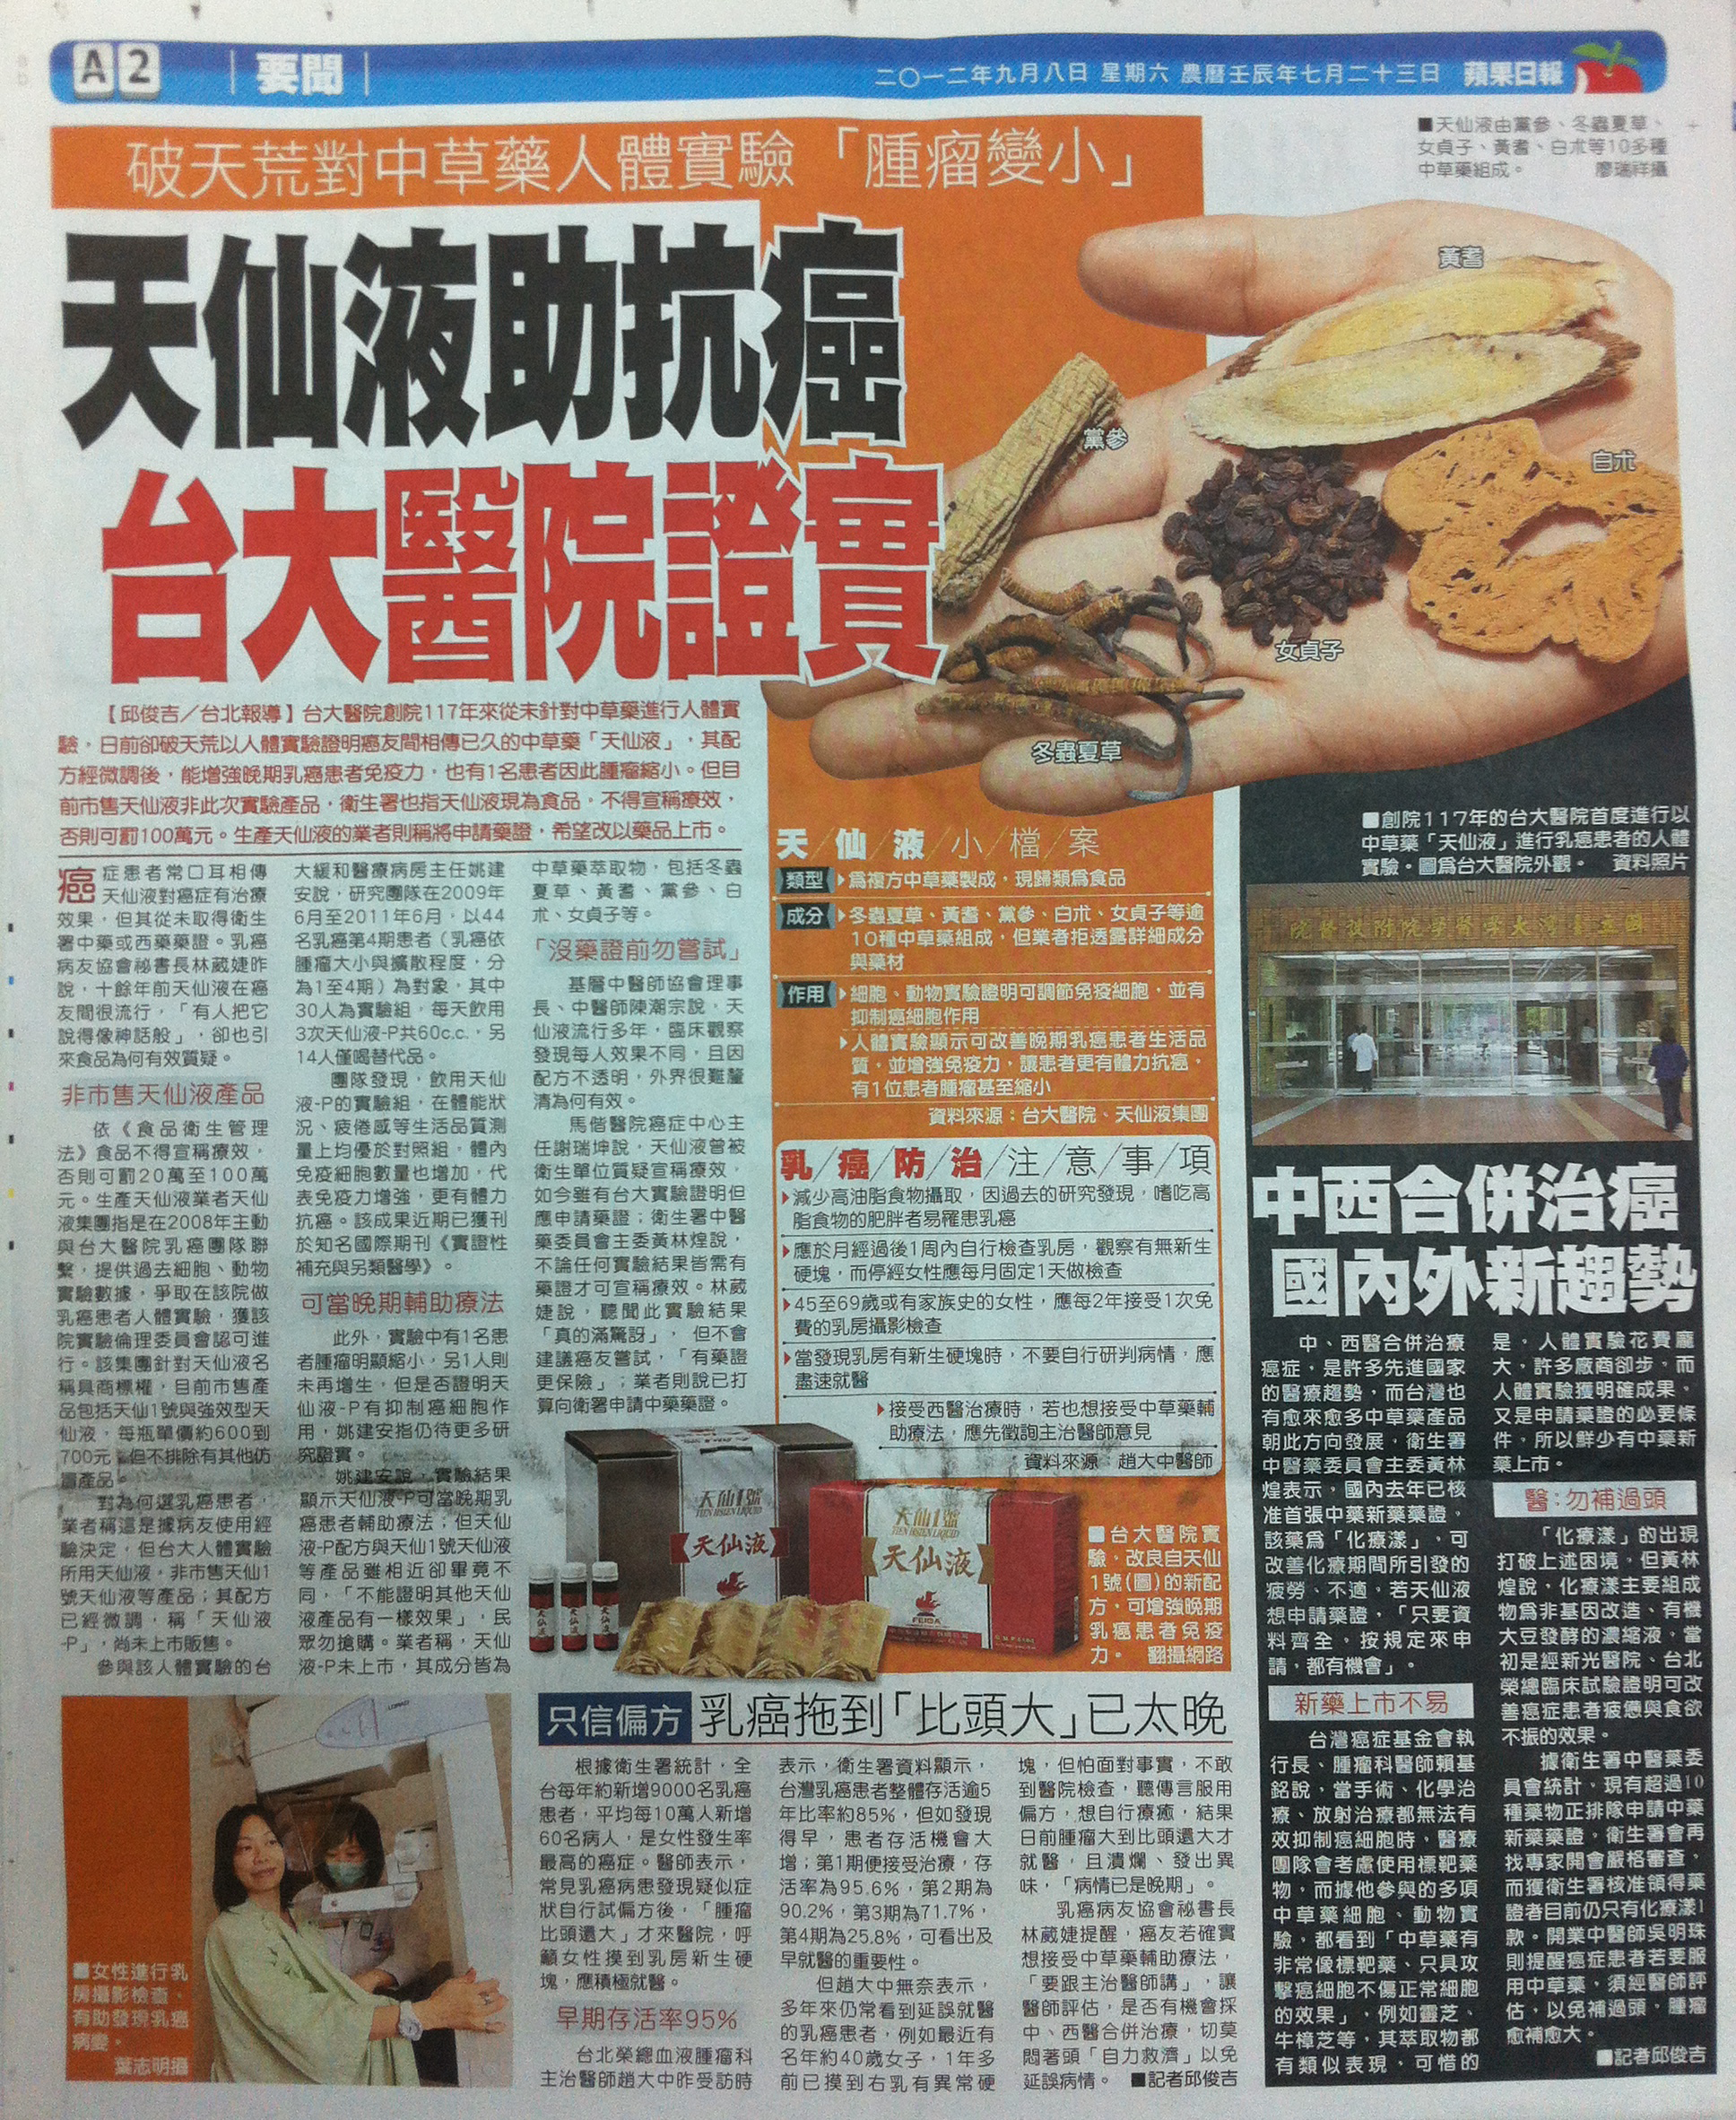 20120908-chinese-newspaper-tian-xian